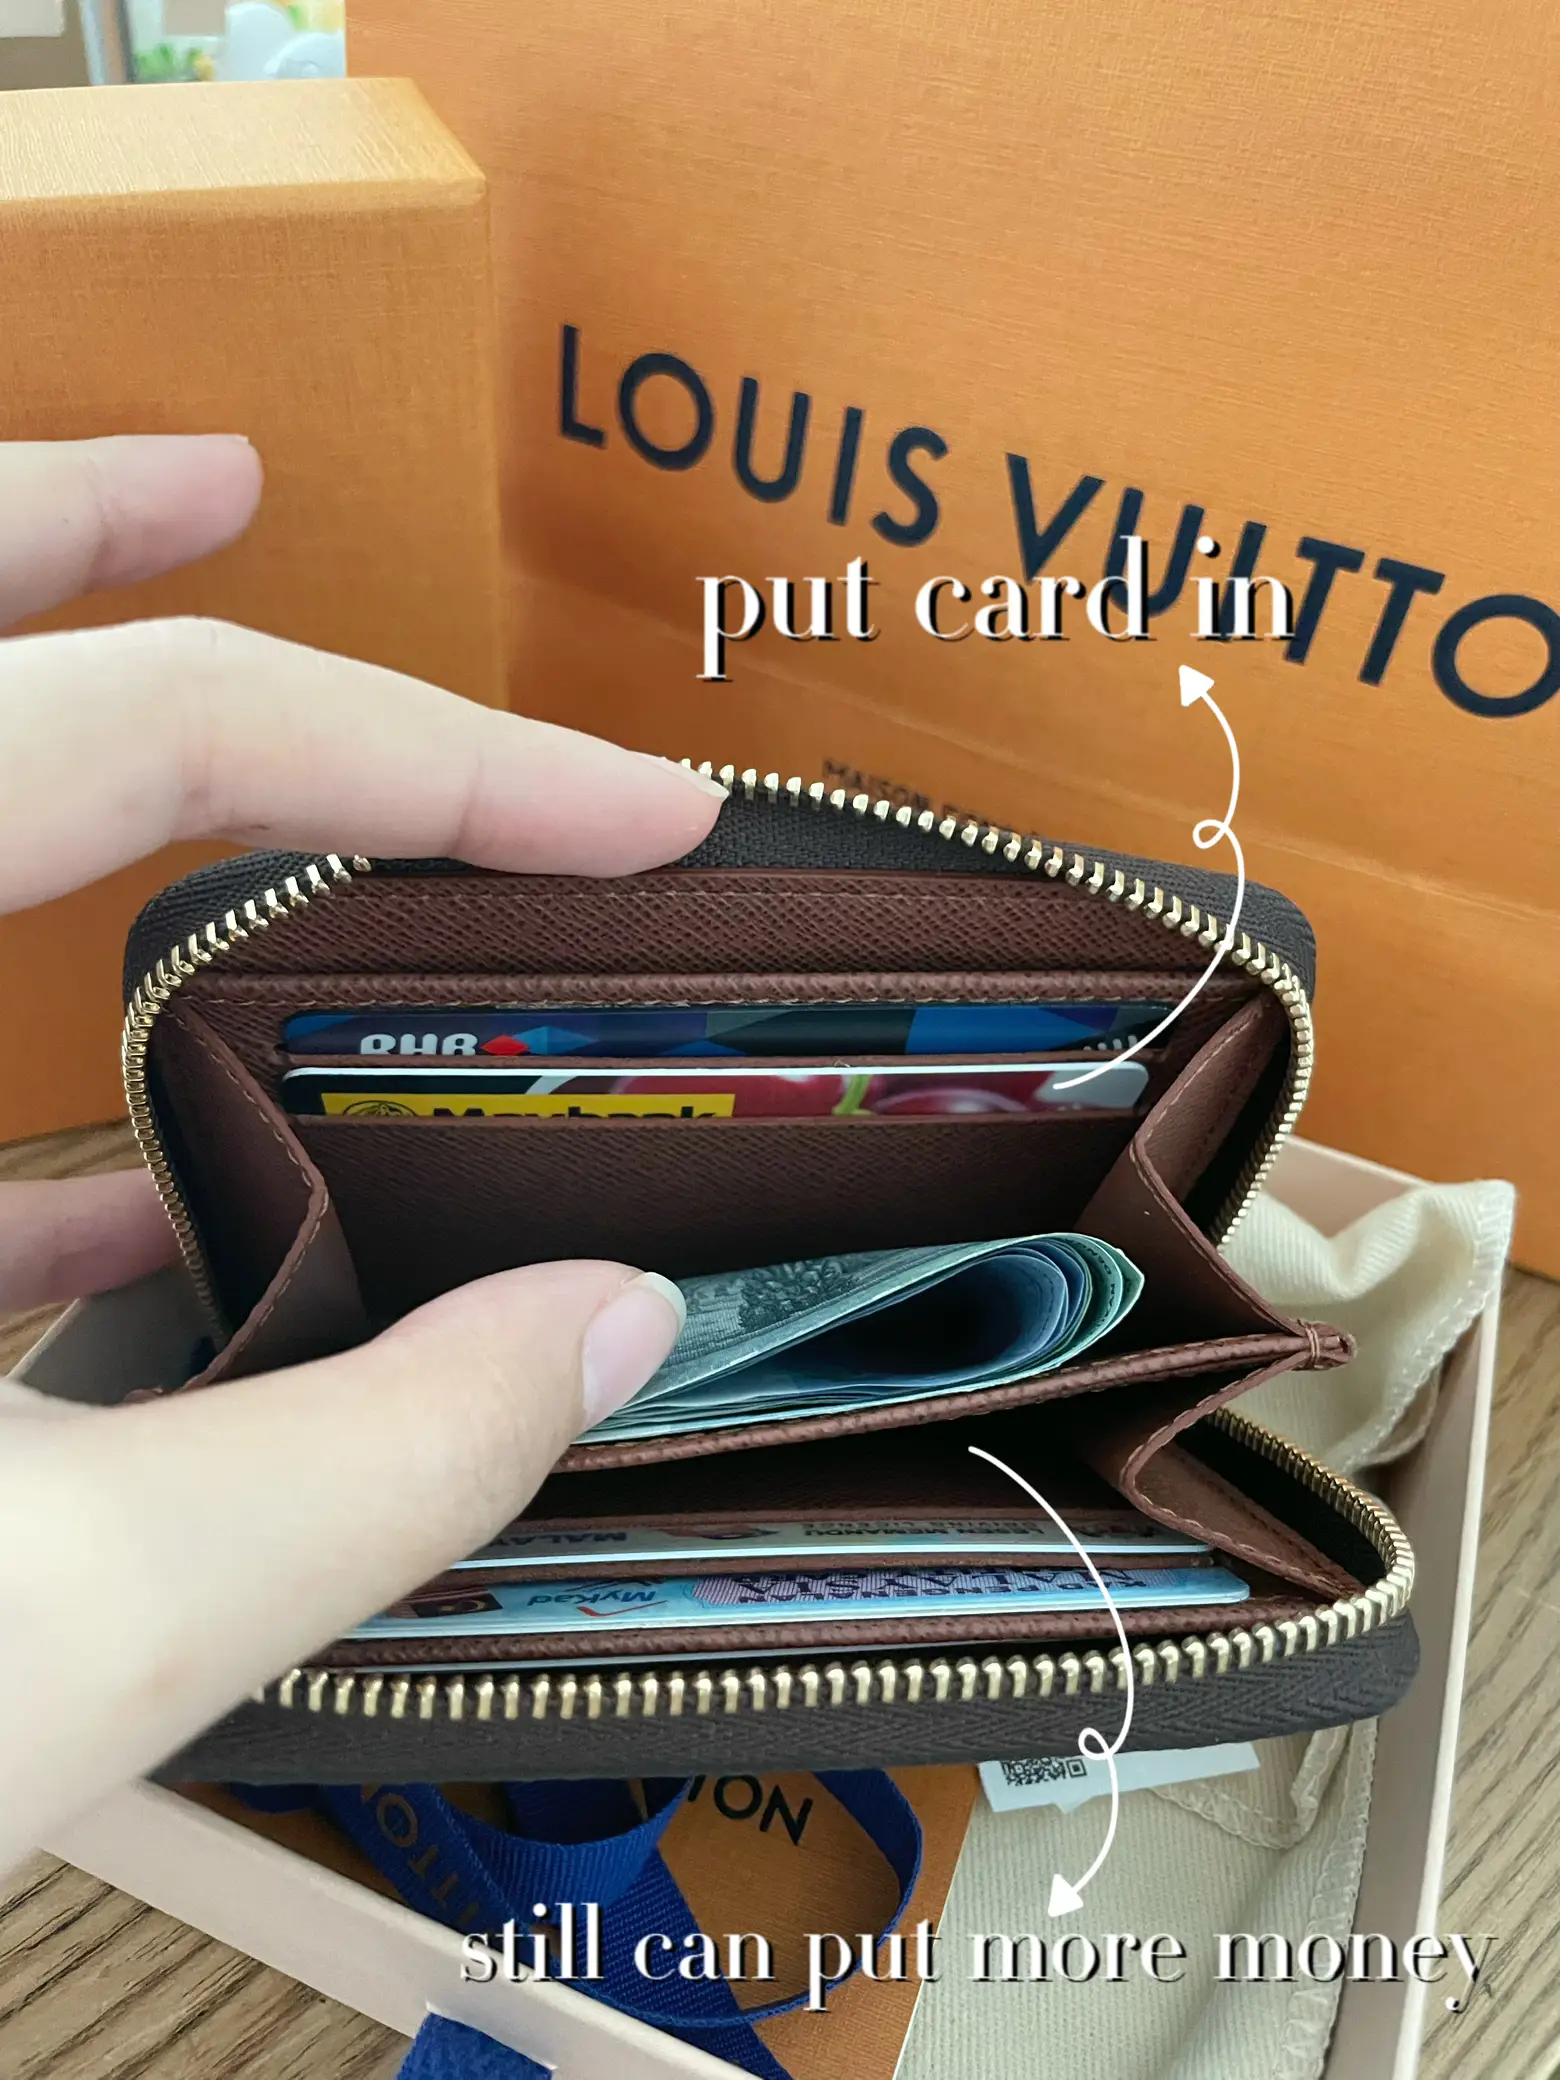 DHGATE LOUIS VUITTON HAUL  Louis Vuitton Key Pouch Unboxing And Review 